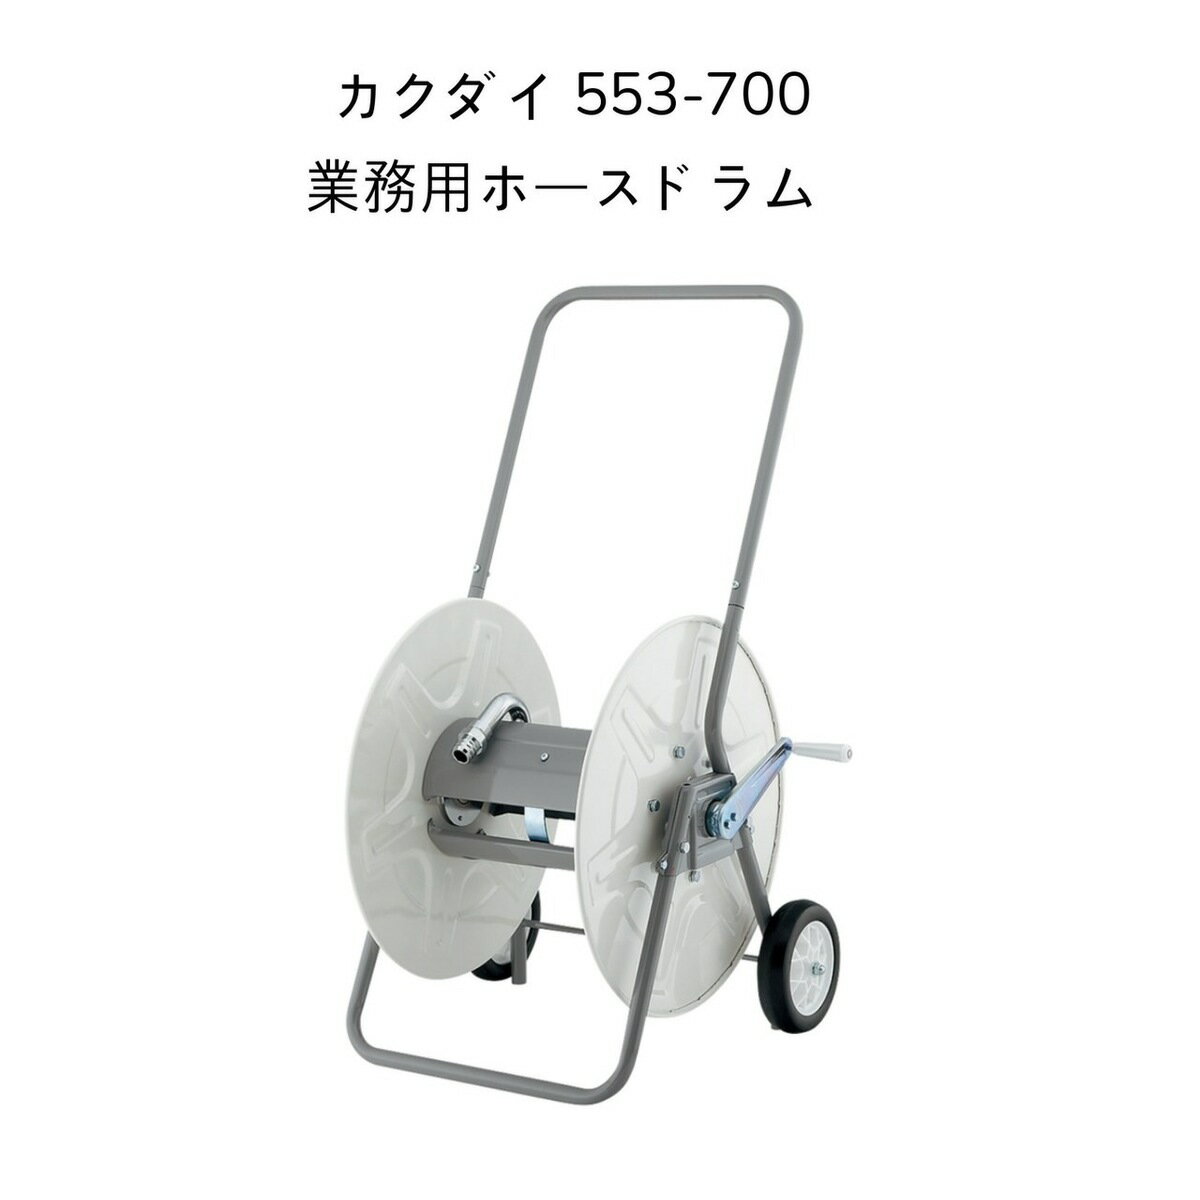 【送料無料】カクダイ 553-700 業務用ホースドラム KAKUDAI